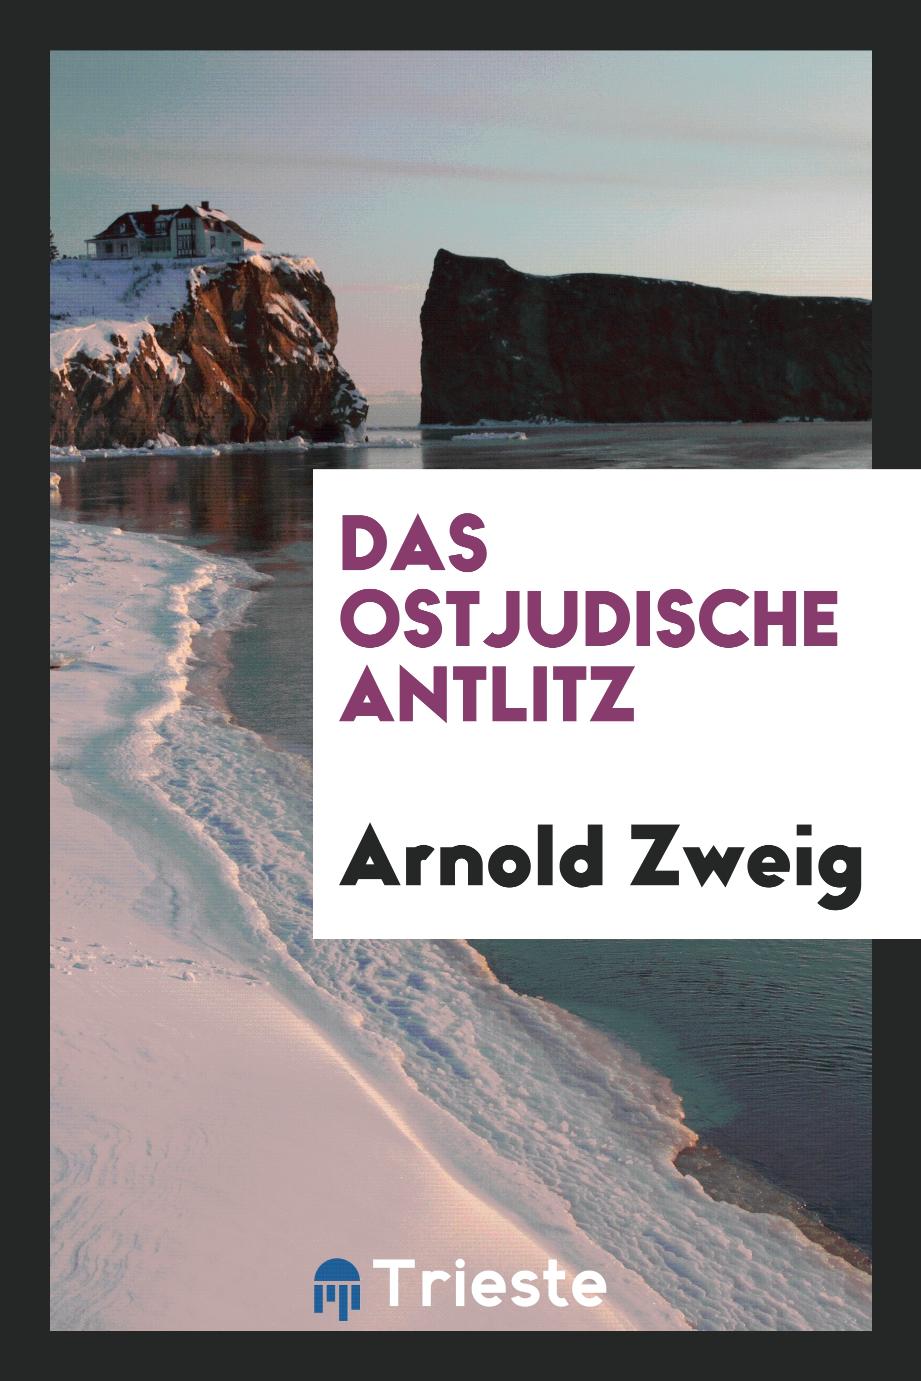 Arnold Zweig - Das ostjudische Antlitz